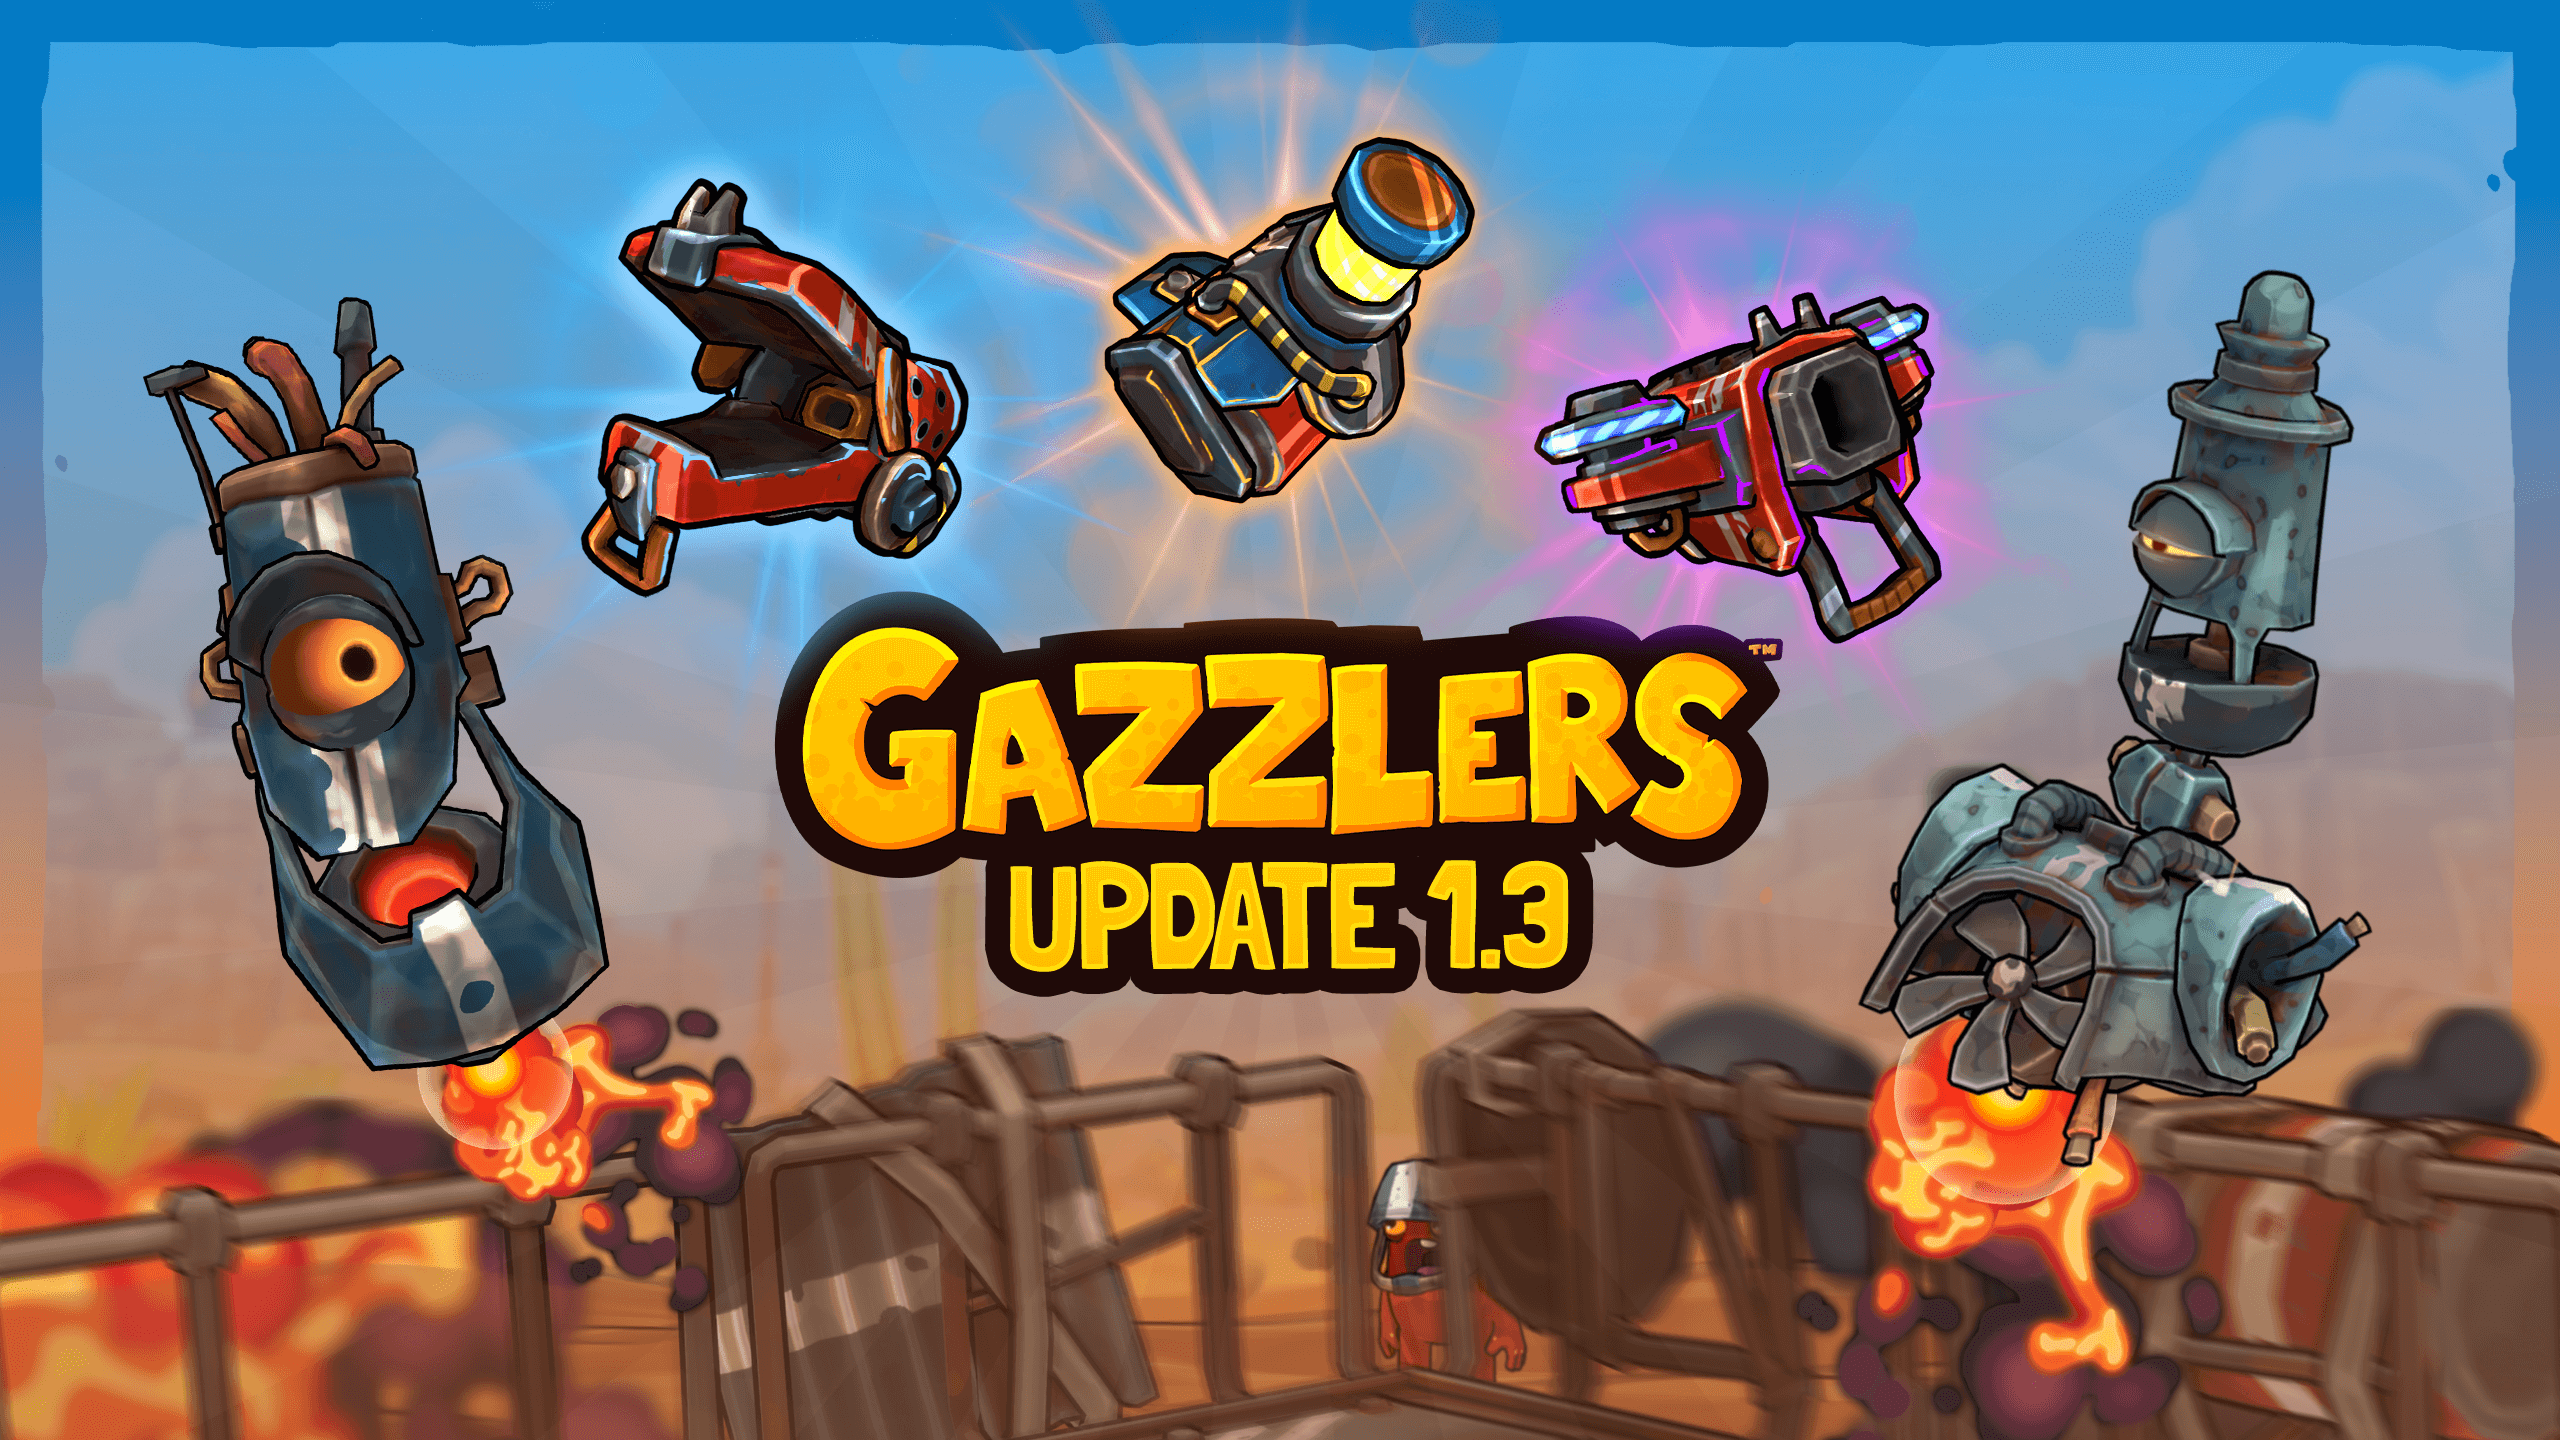 Gazzlers Update 1.3